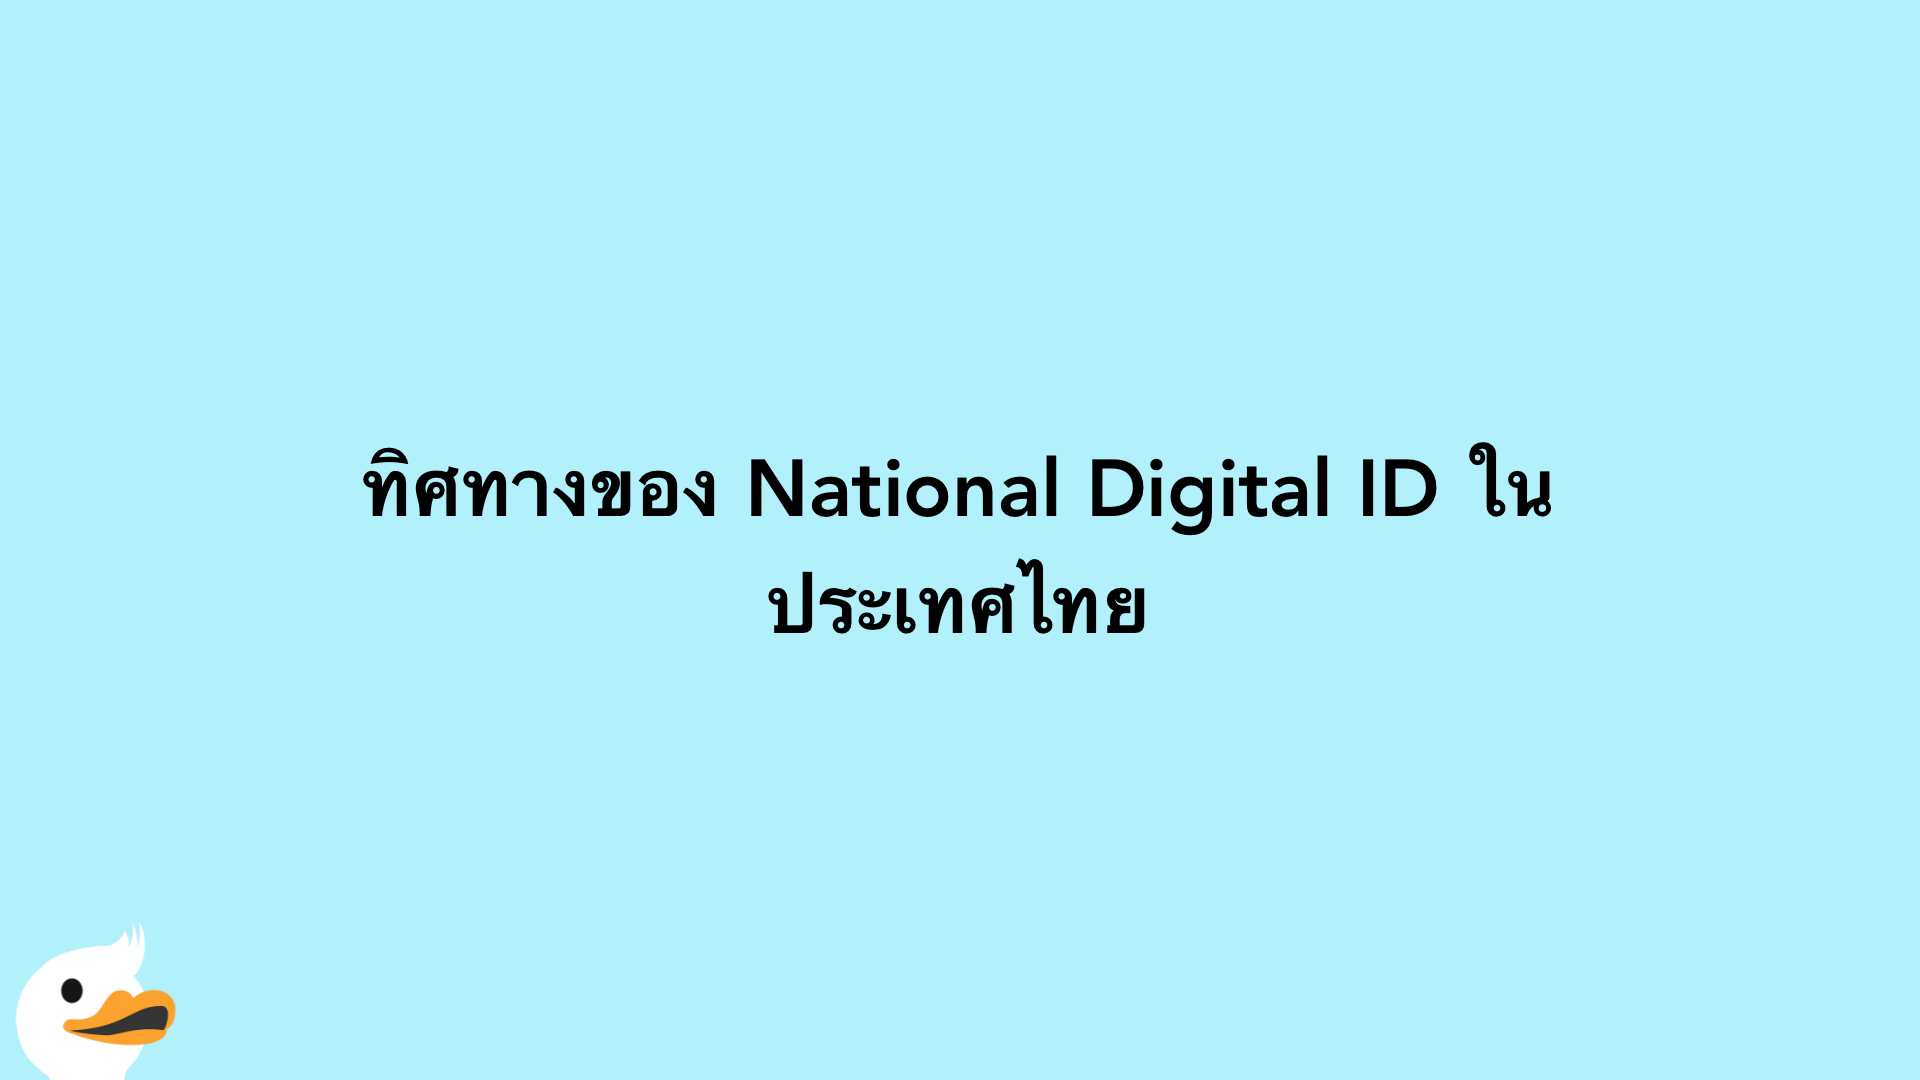 ทิศทางของ National Digital ID ในประเทศไทย